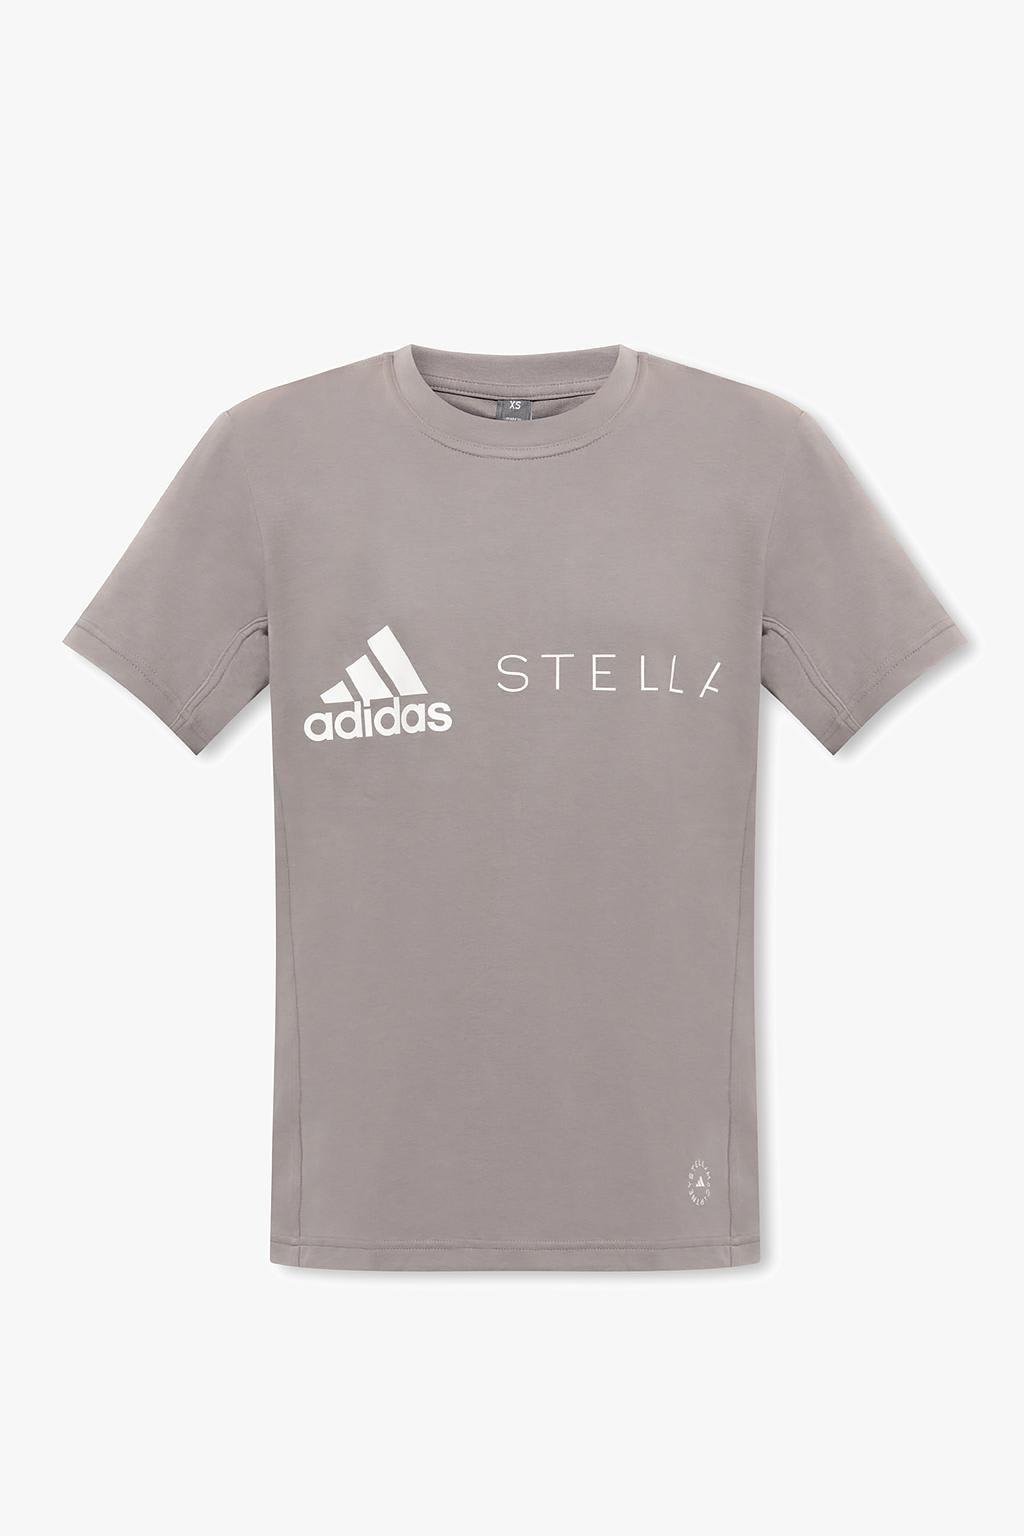 Adidas By Stella Mccartney T-shirt With Logo In Grey